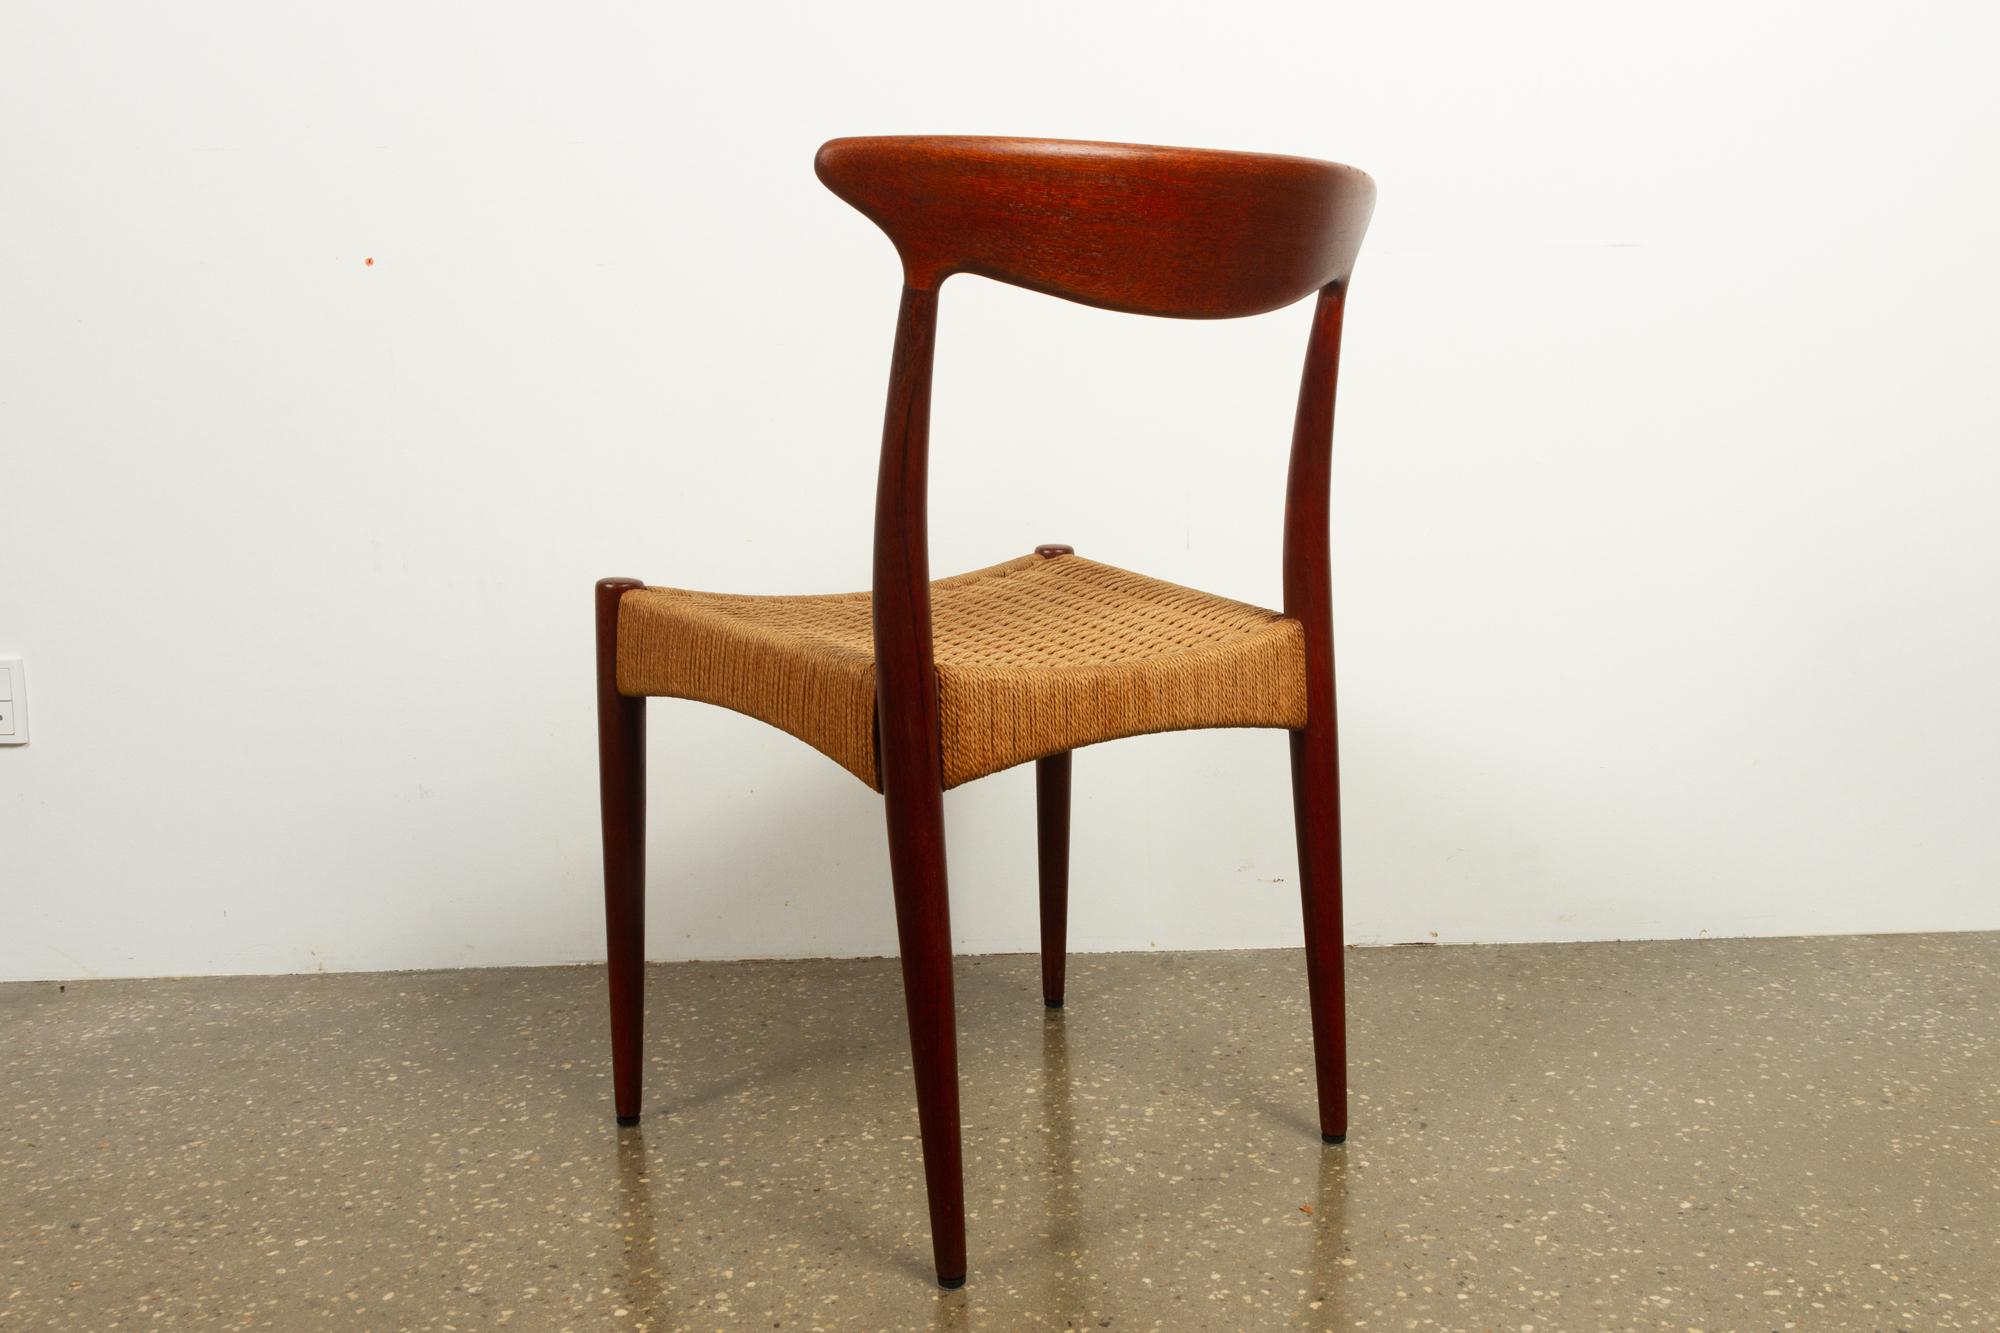 Mid-20th Century Vintage Danish Teak Chair by Arne Hovmand-Olsen for Mogens Kold, 1950s